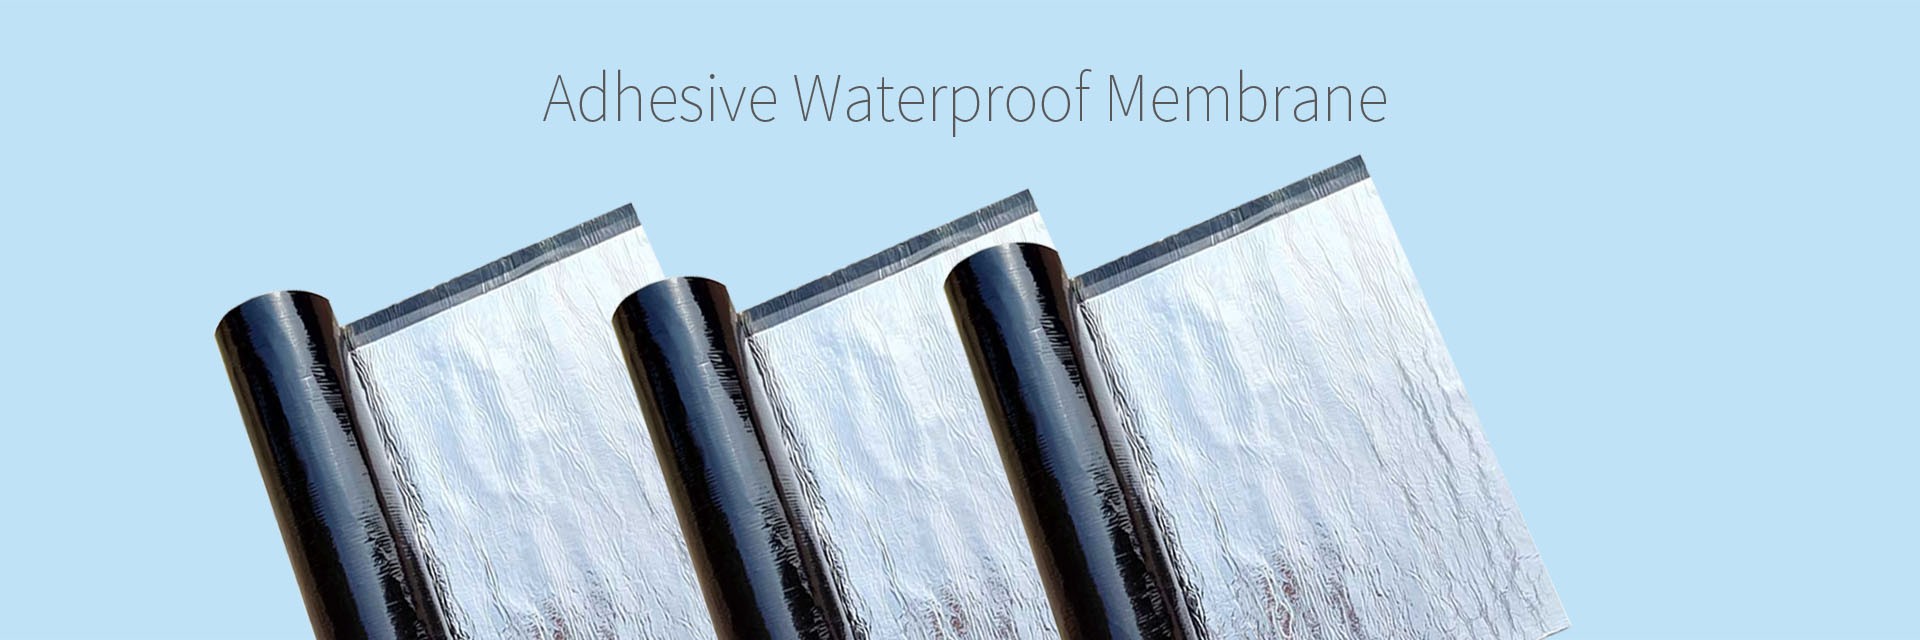 Adhesive waterproof membrane